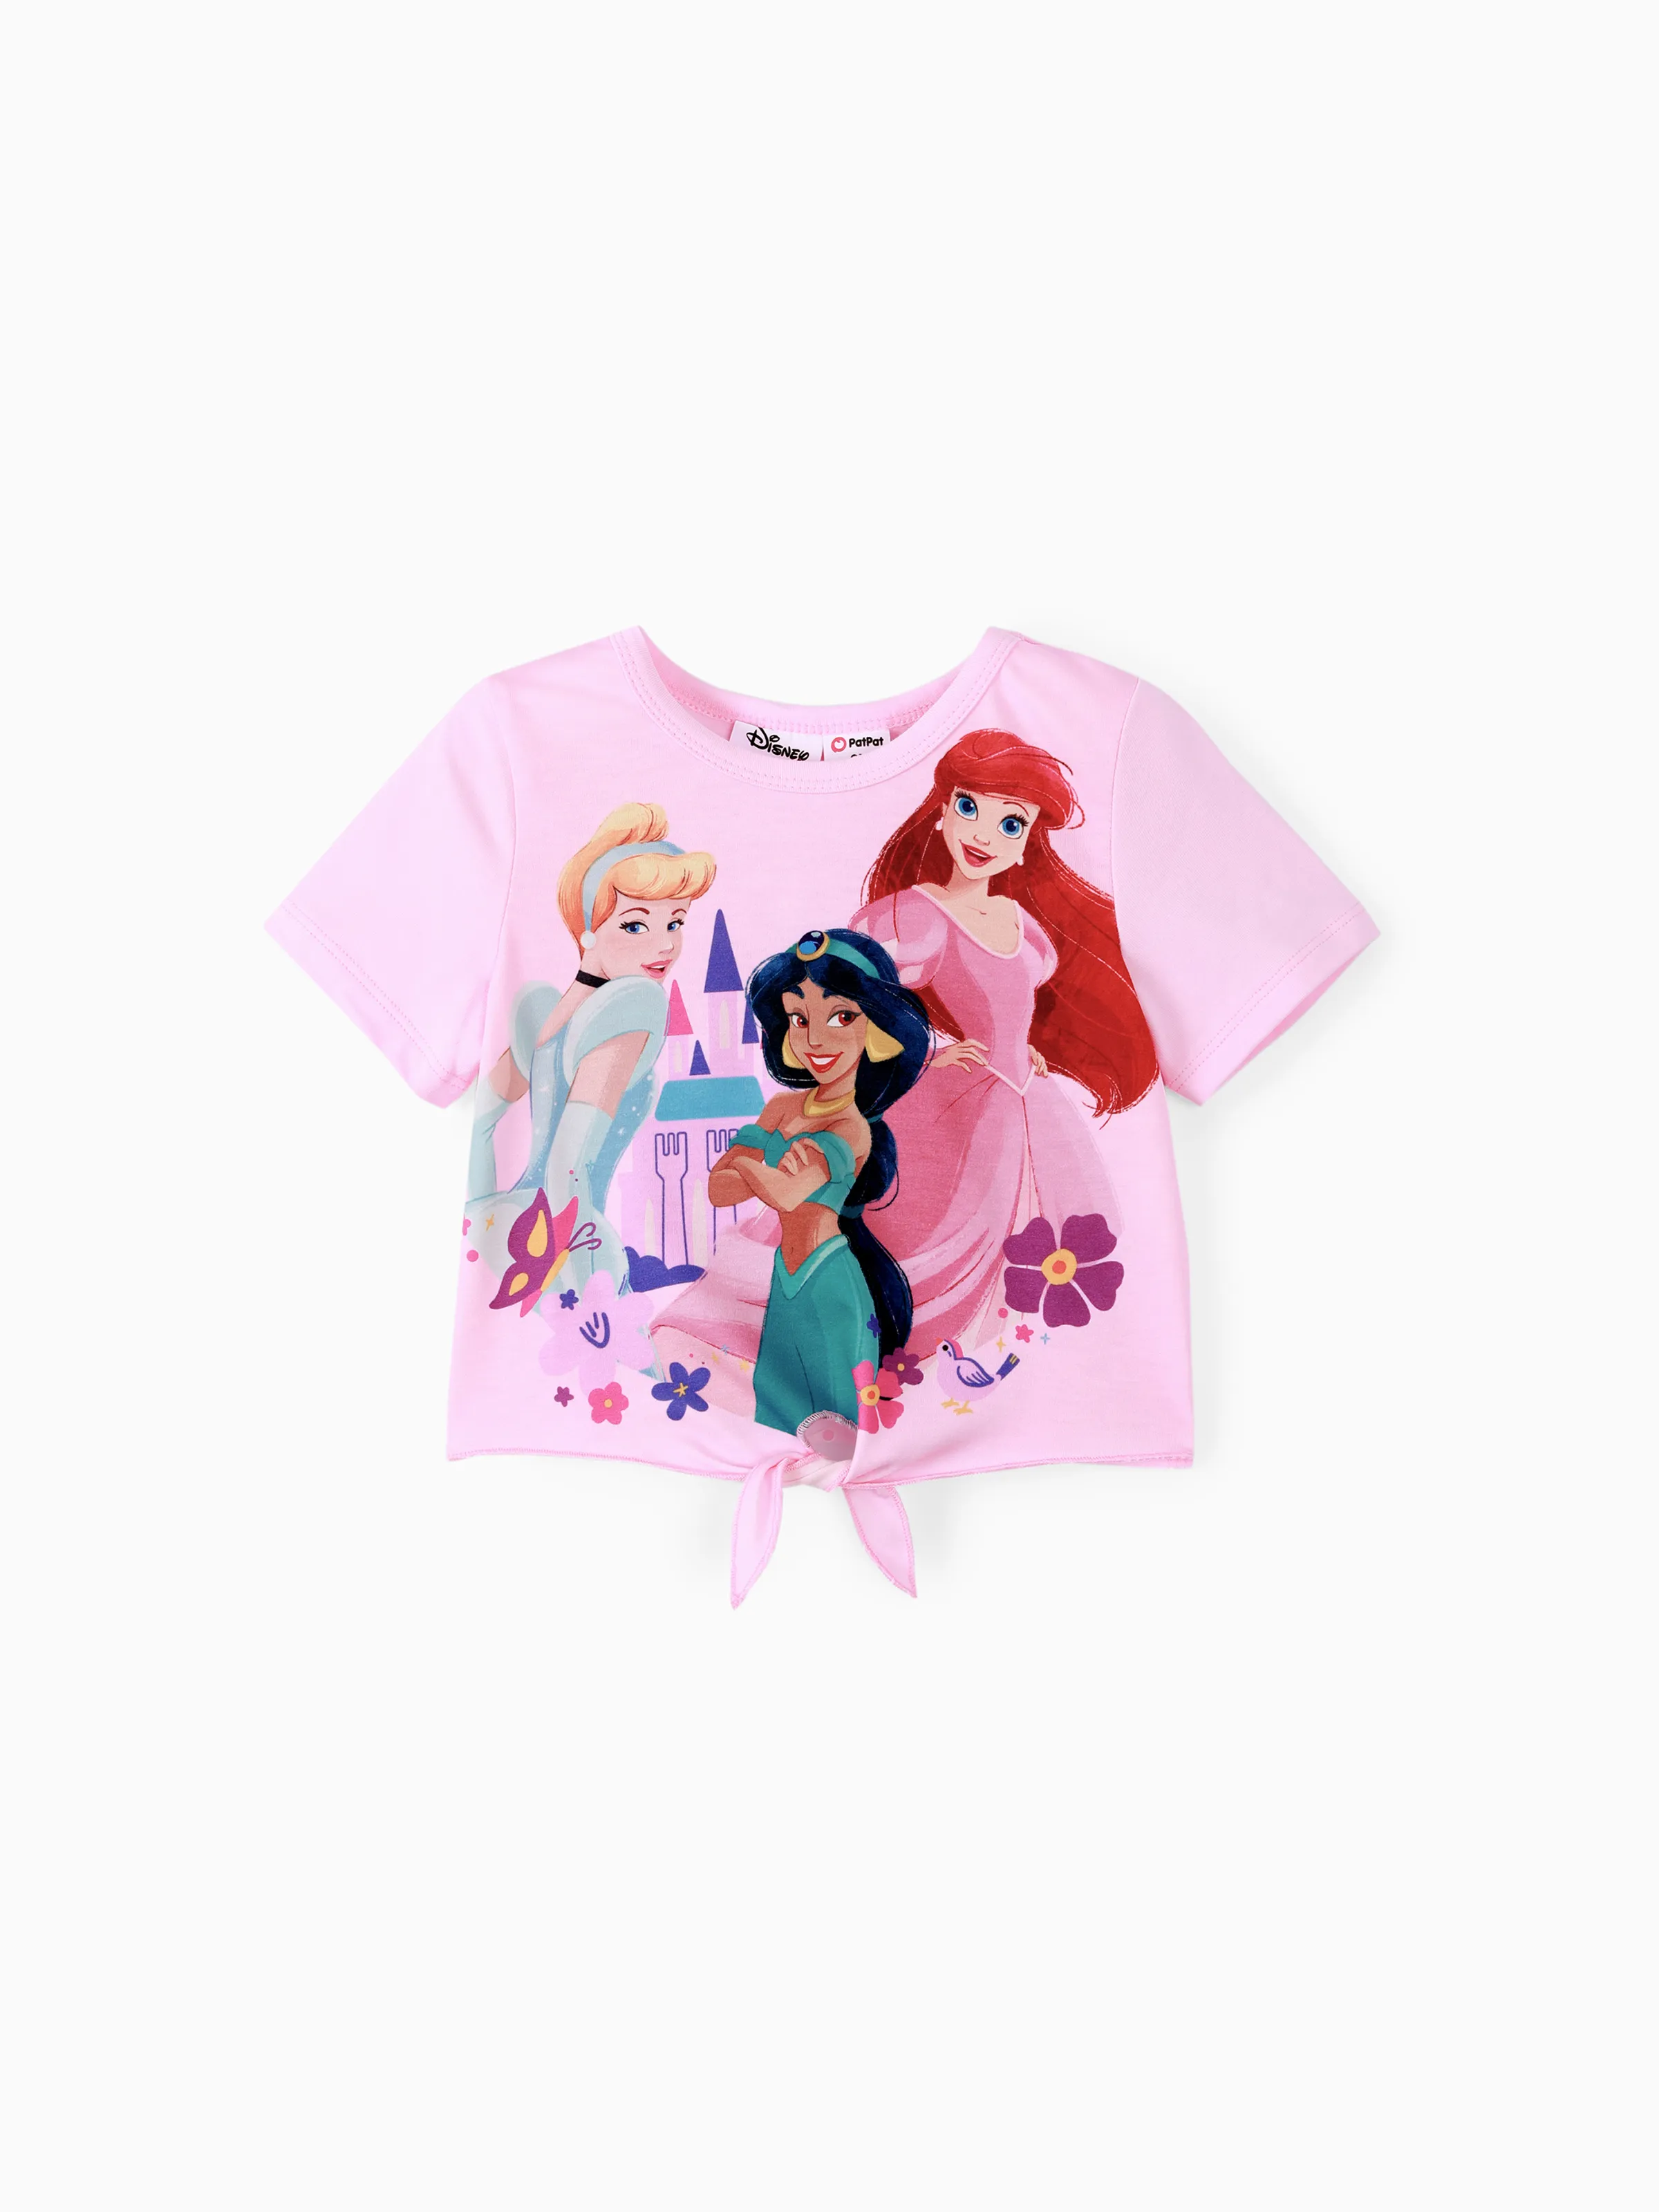 

Disney princess Toddler Girls Childlike Tee